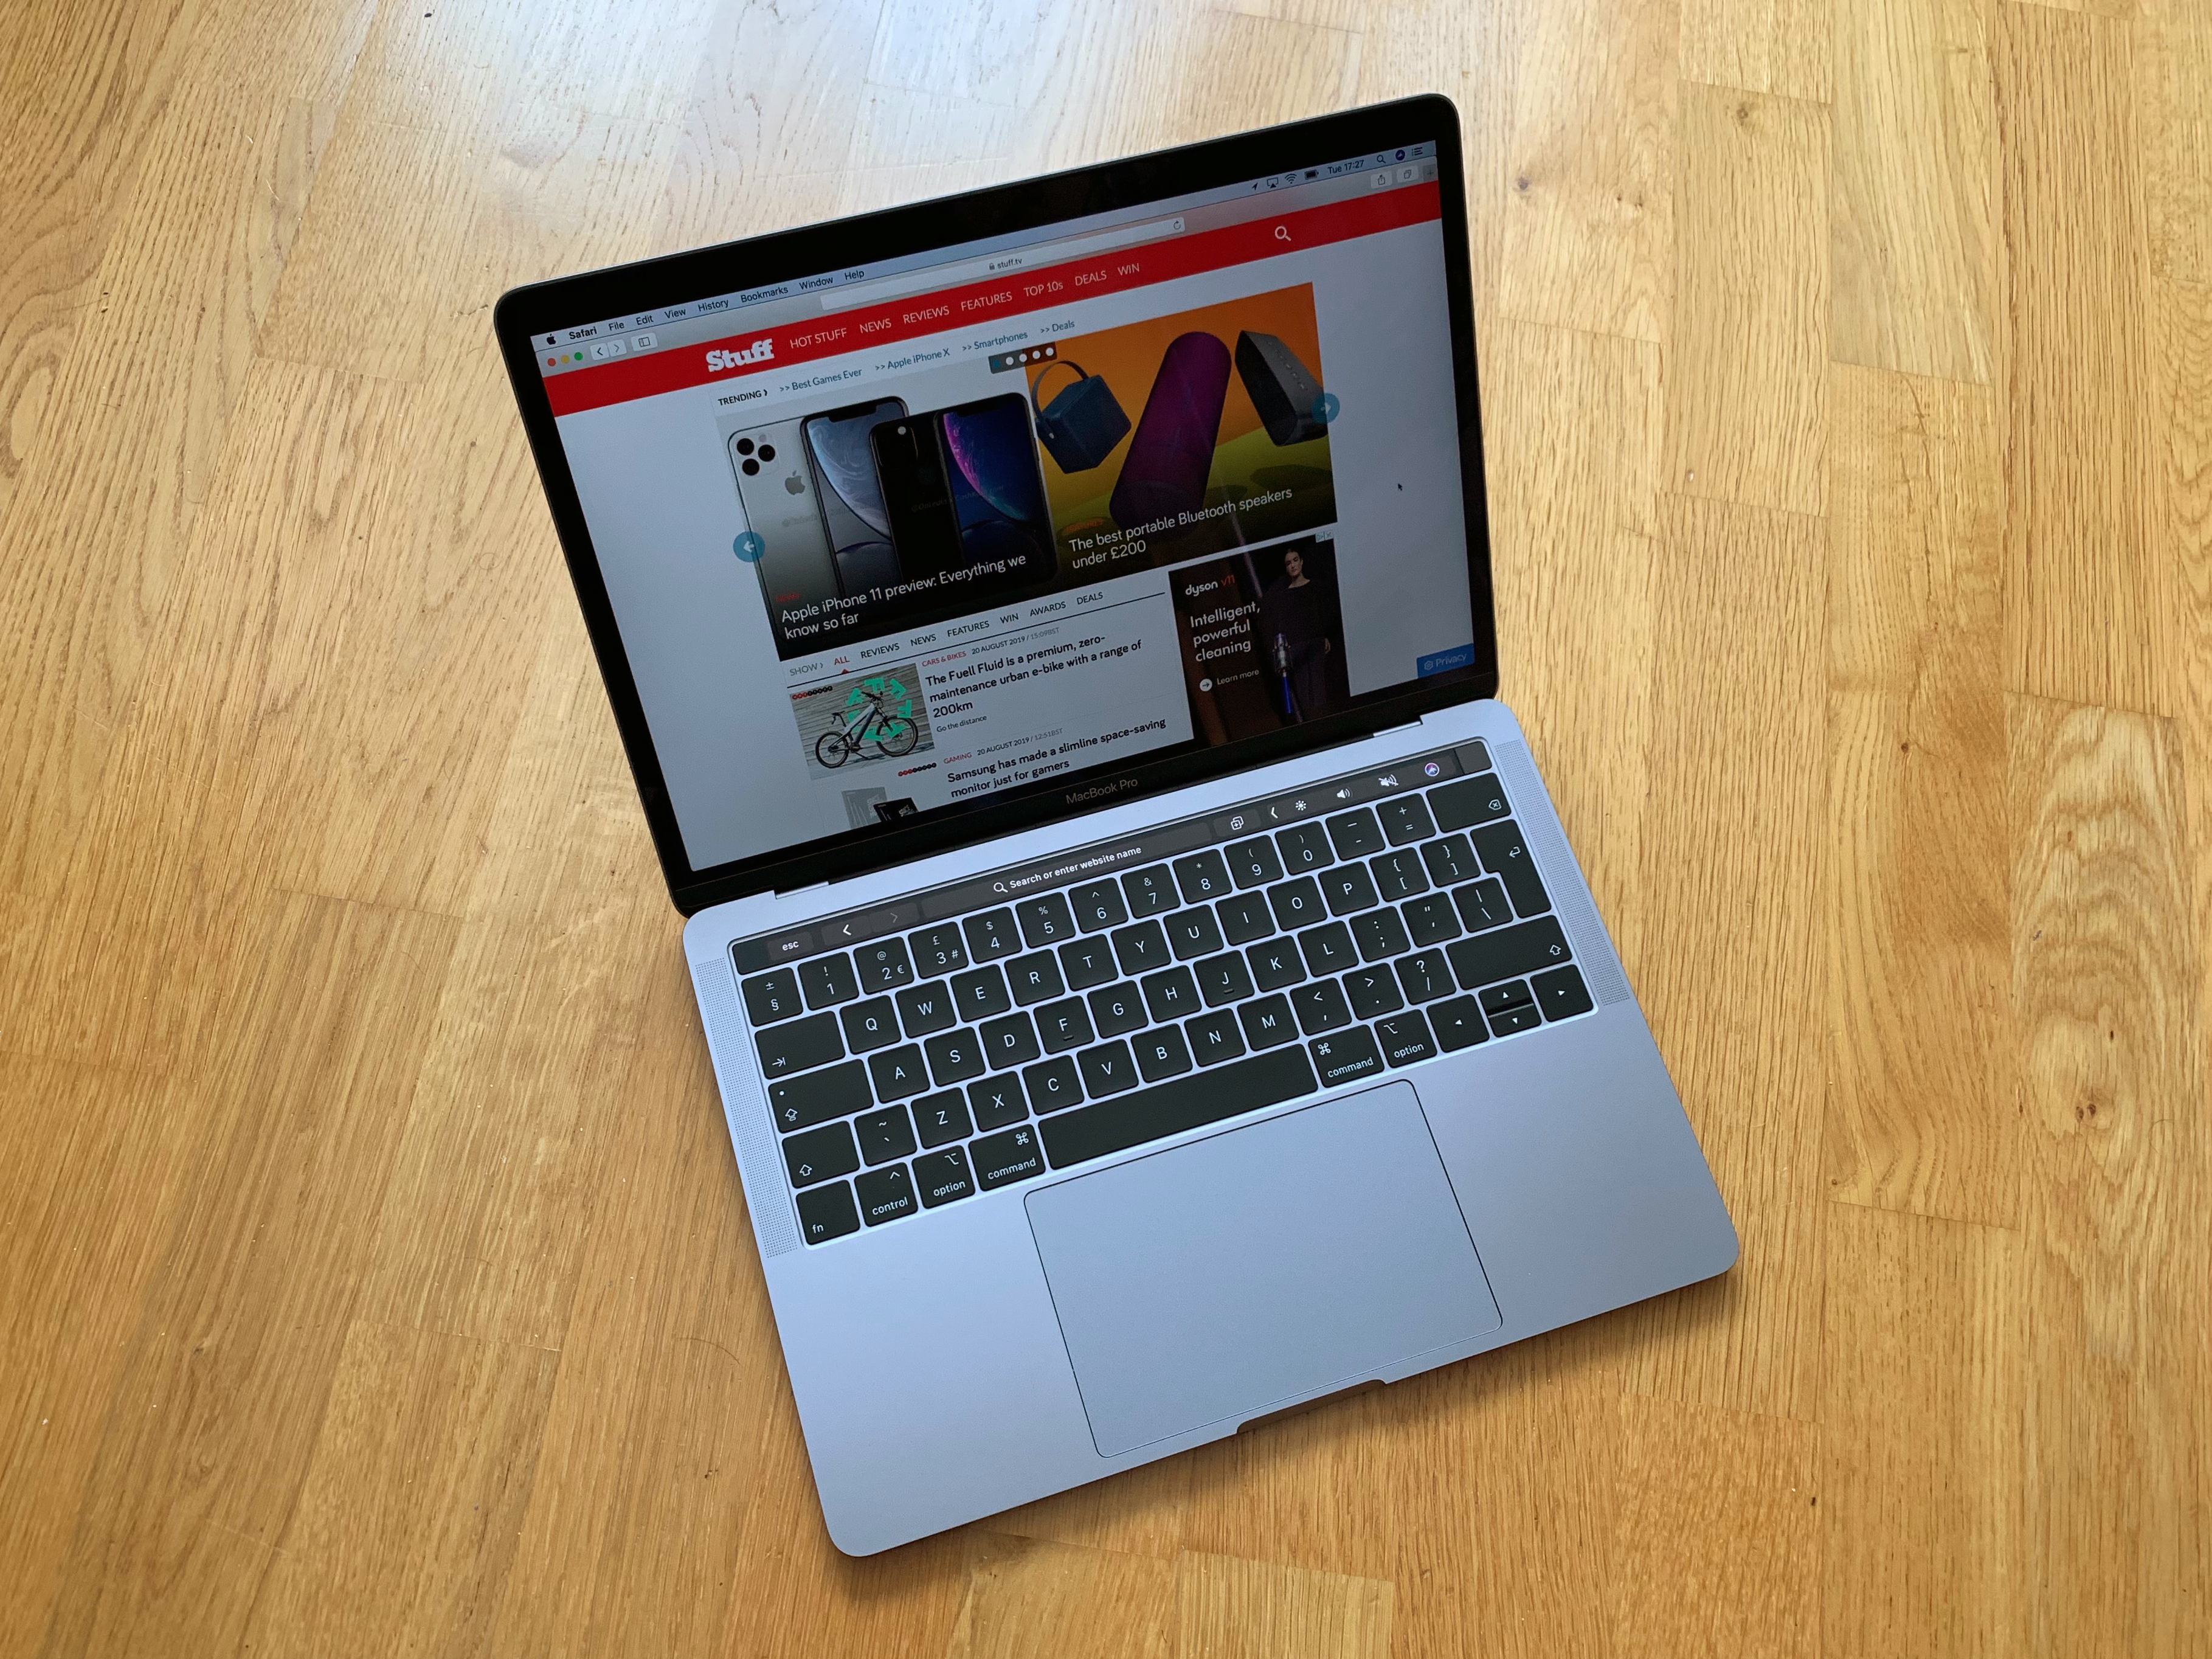 Apple MacBook Pro 13in (2019) verdict